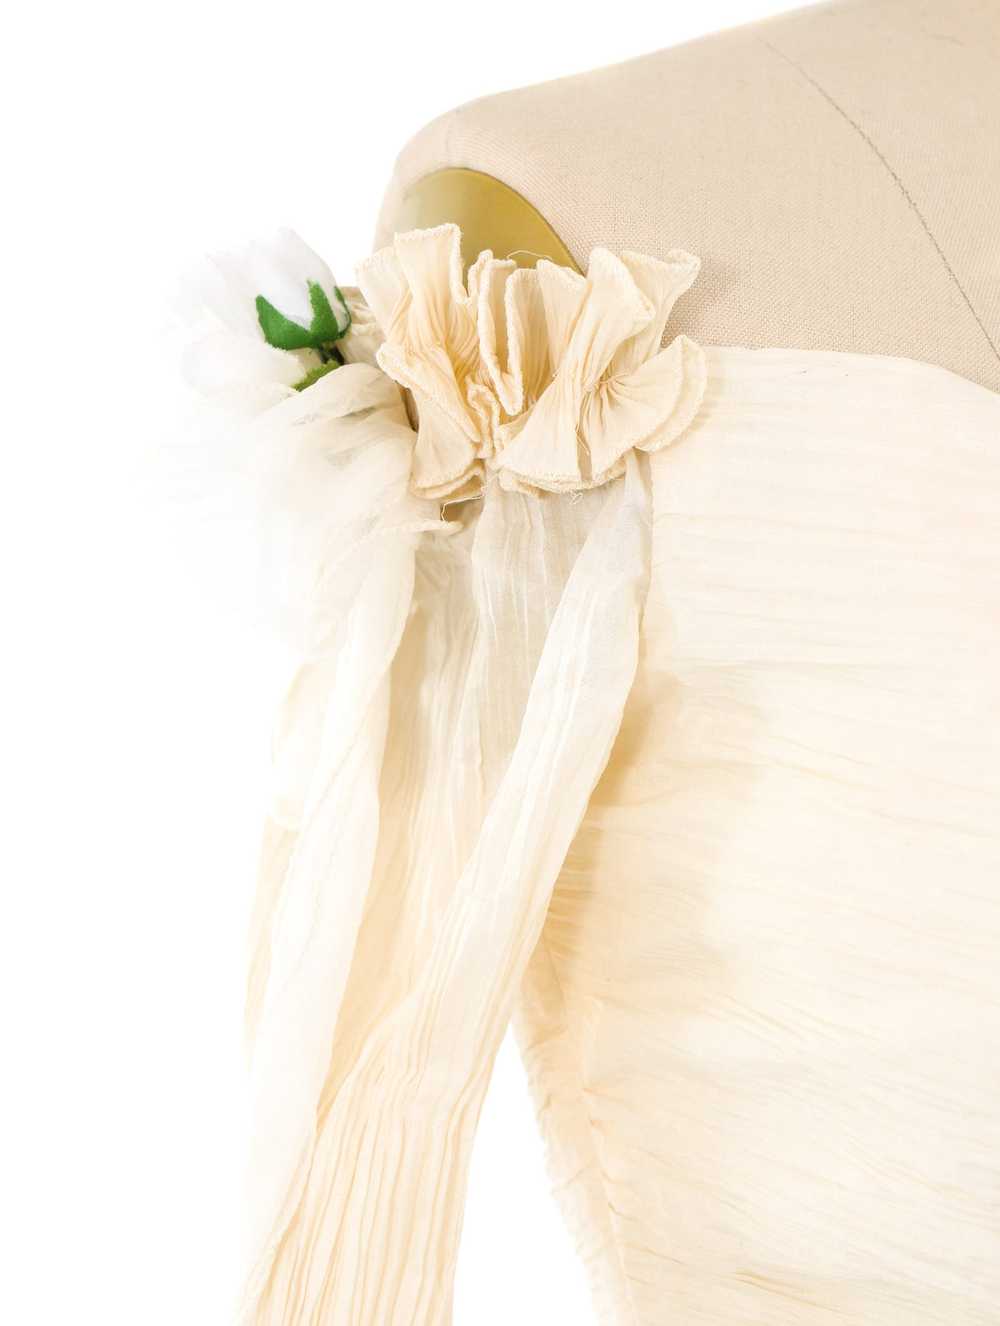 Zandra Rhodes Floral Embellished Dress - image 7